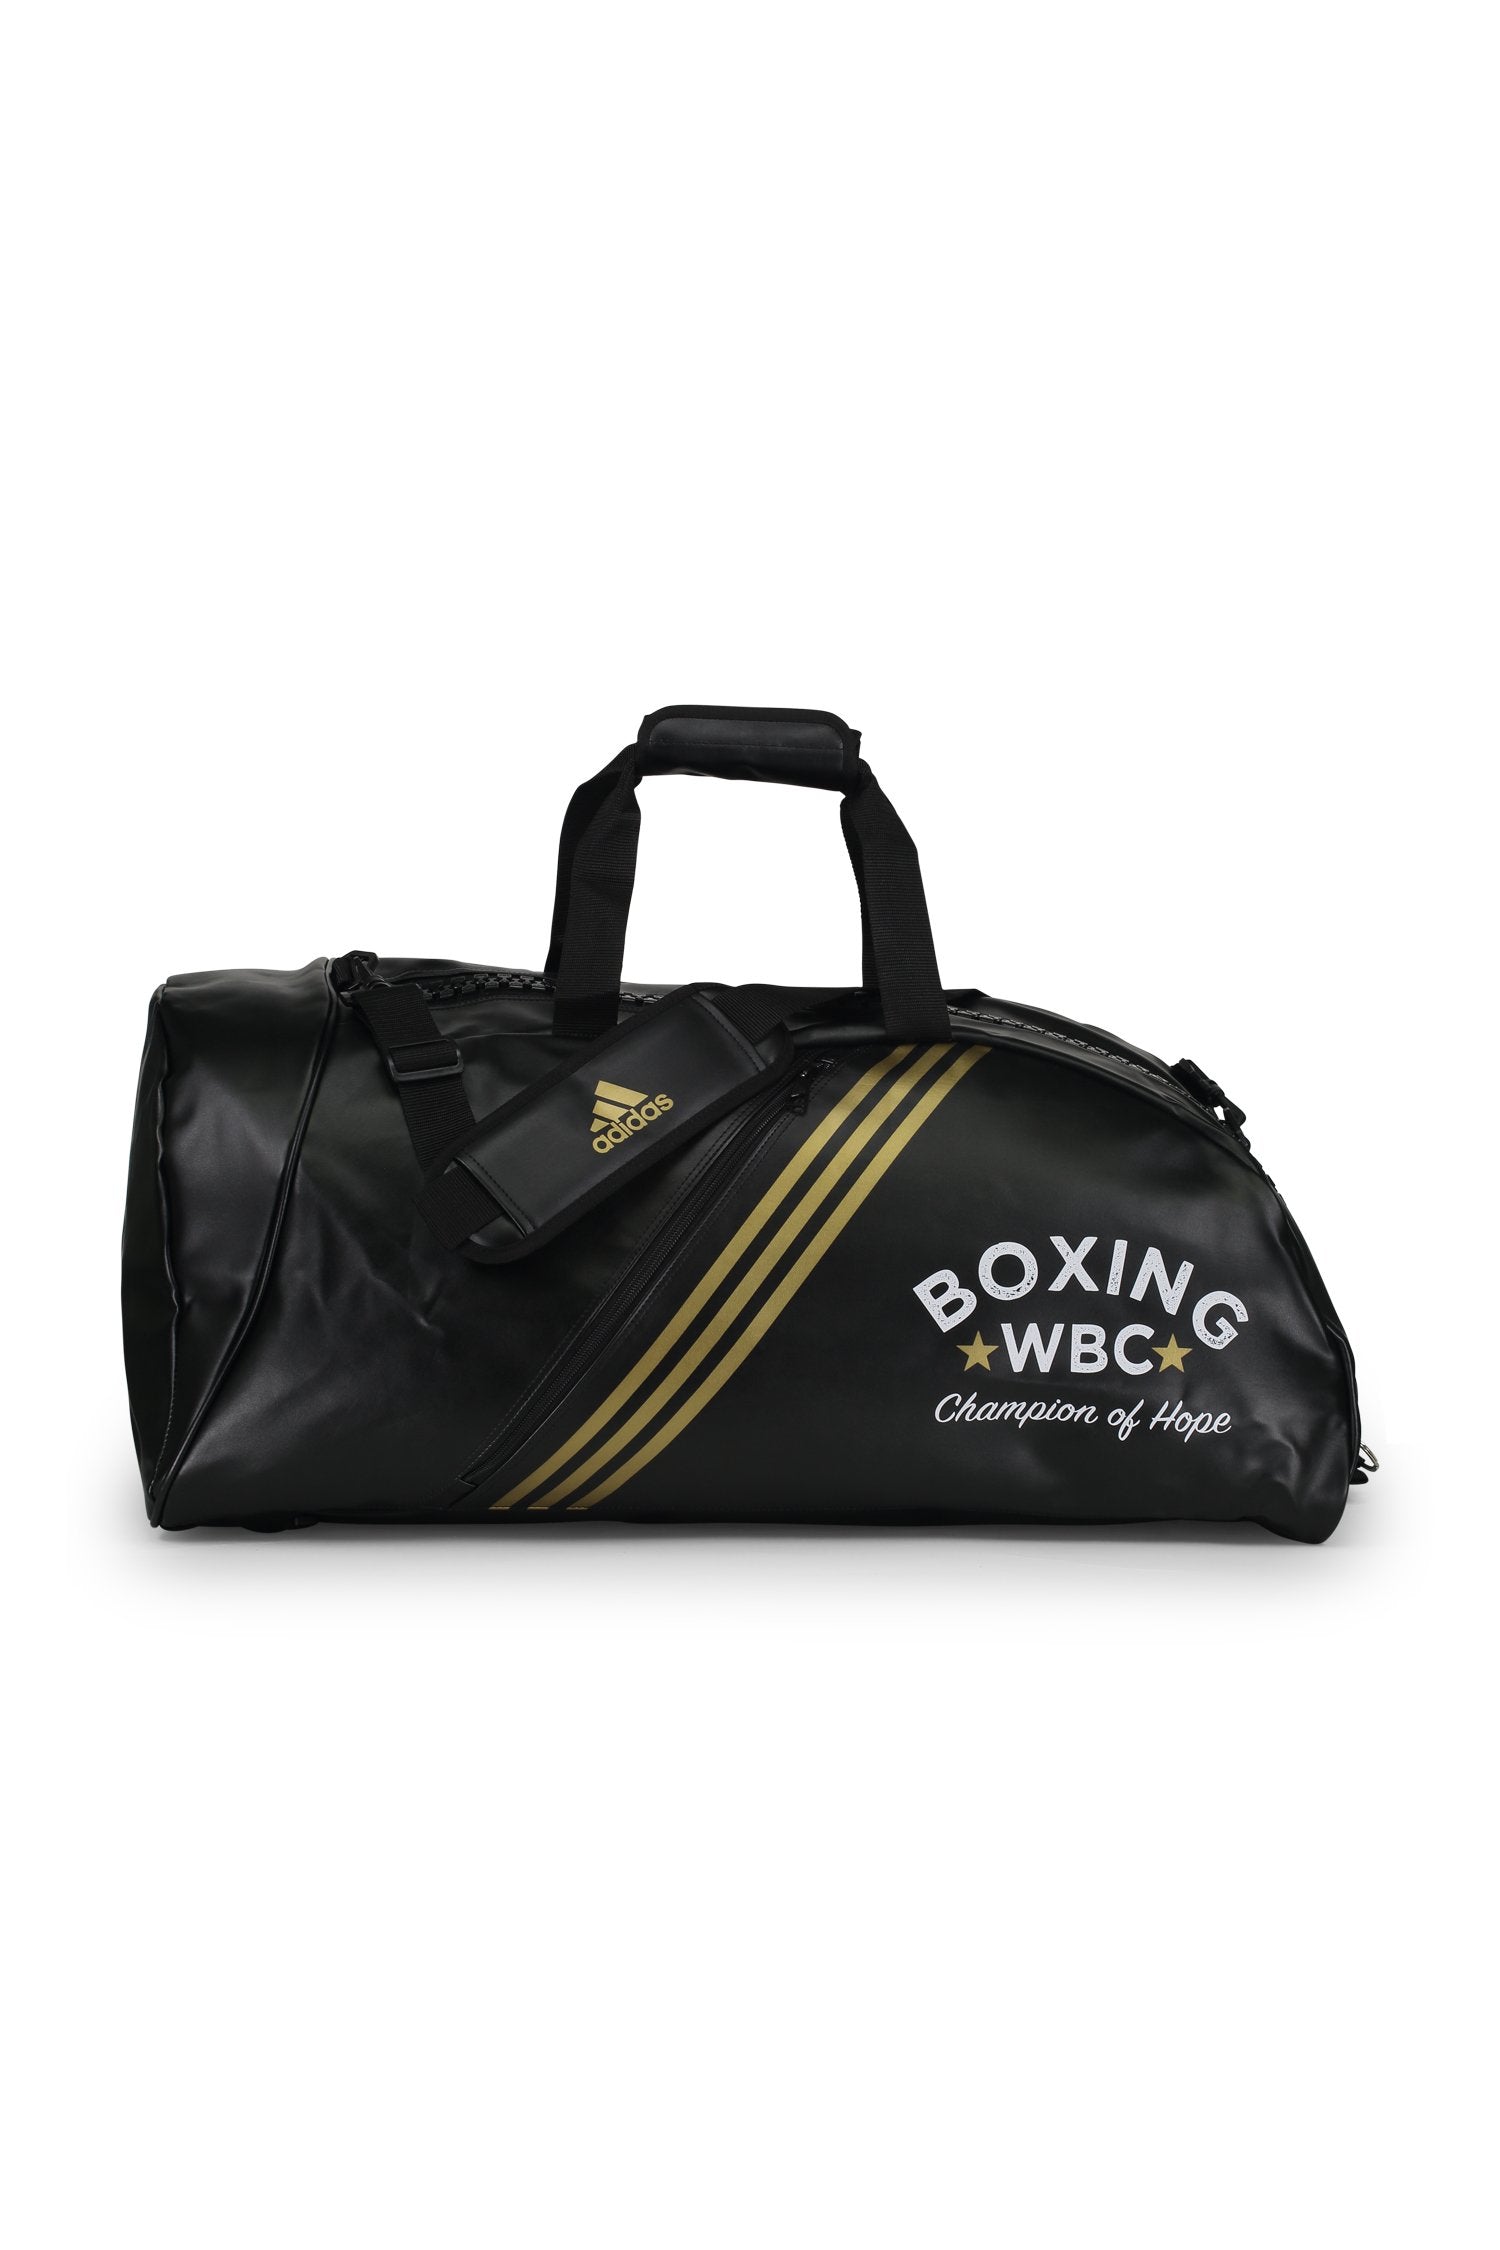 Adidas Bags Large / Black WBC/Adidas Gym & Travel Bag